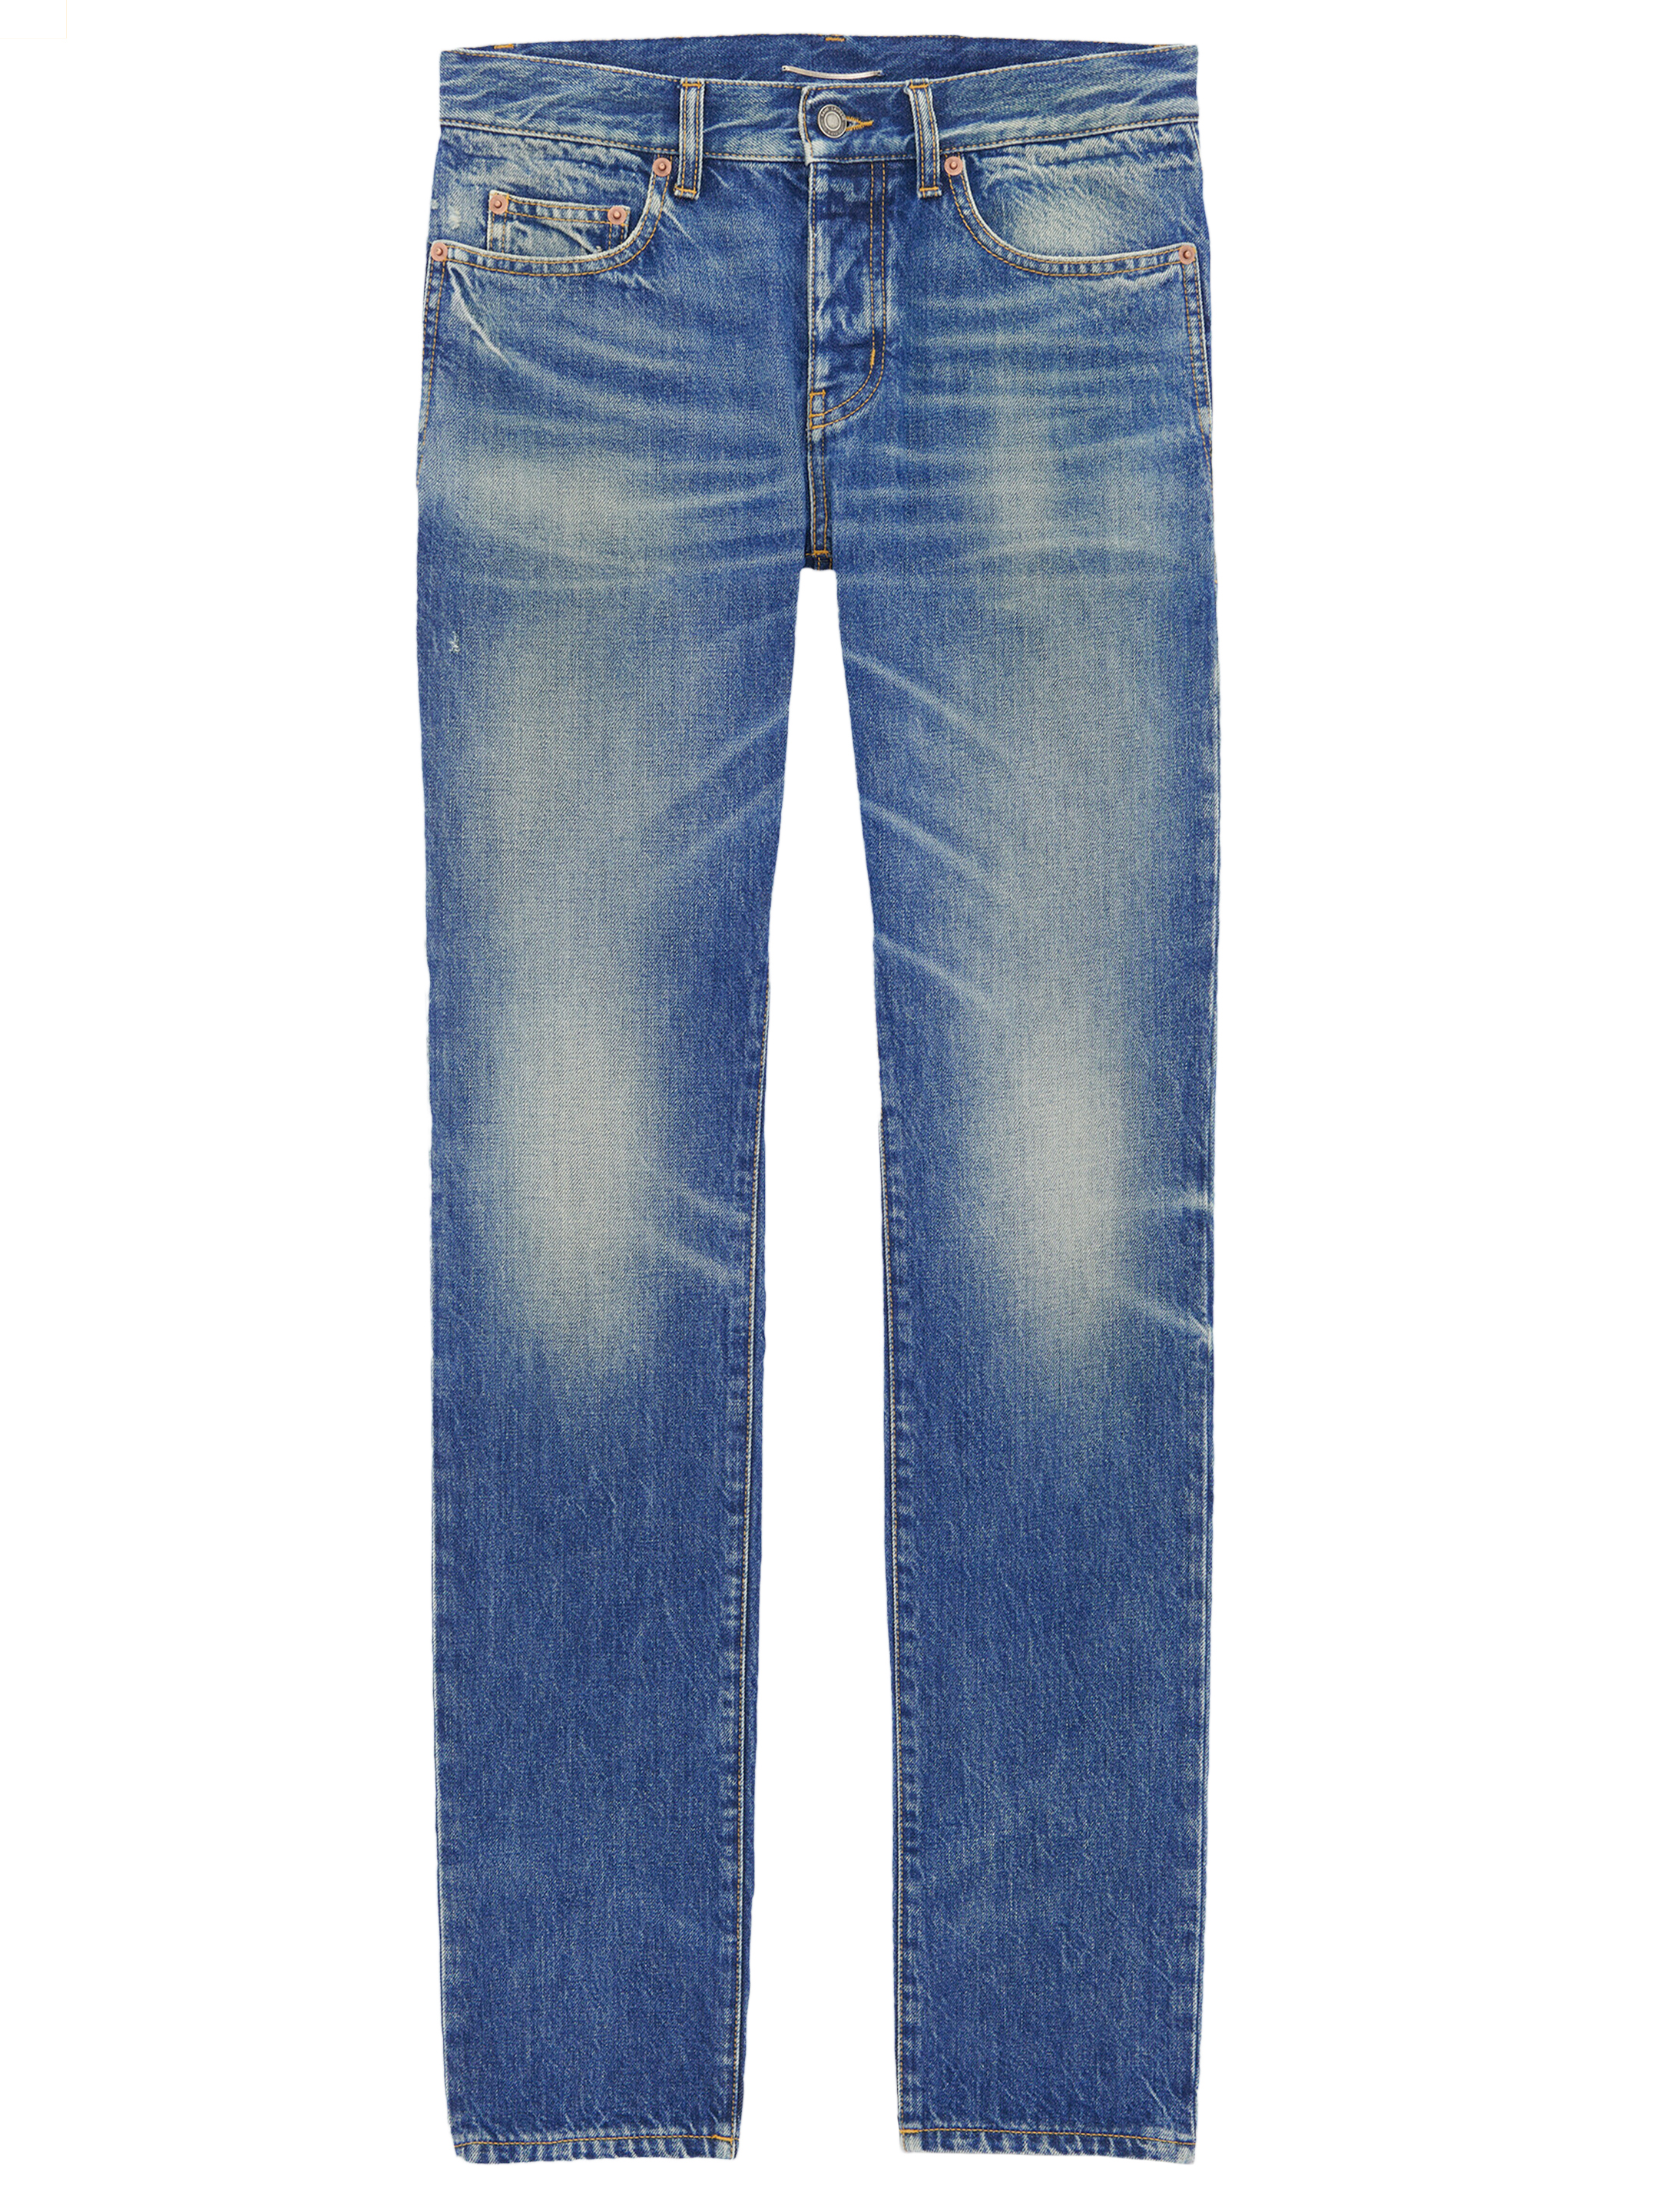 Saint Laurent Jeans In Deauville Blue Denim